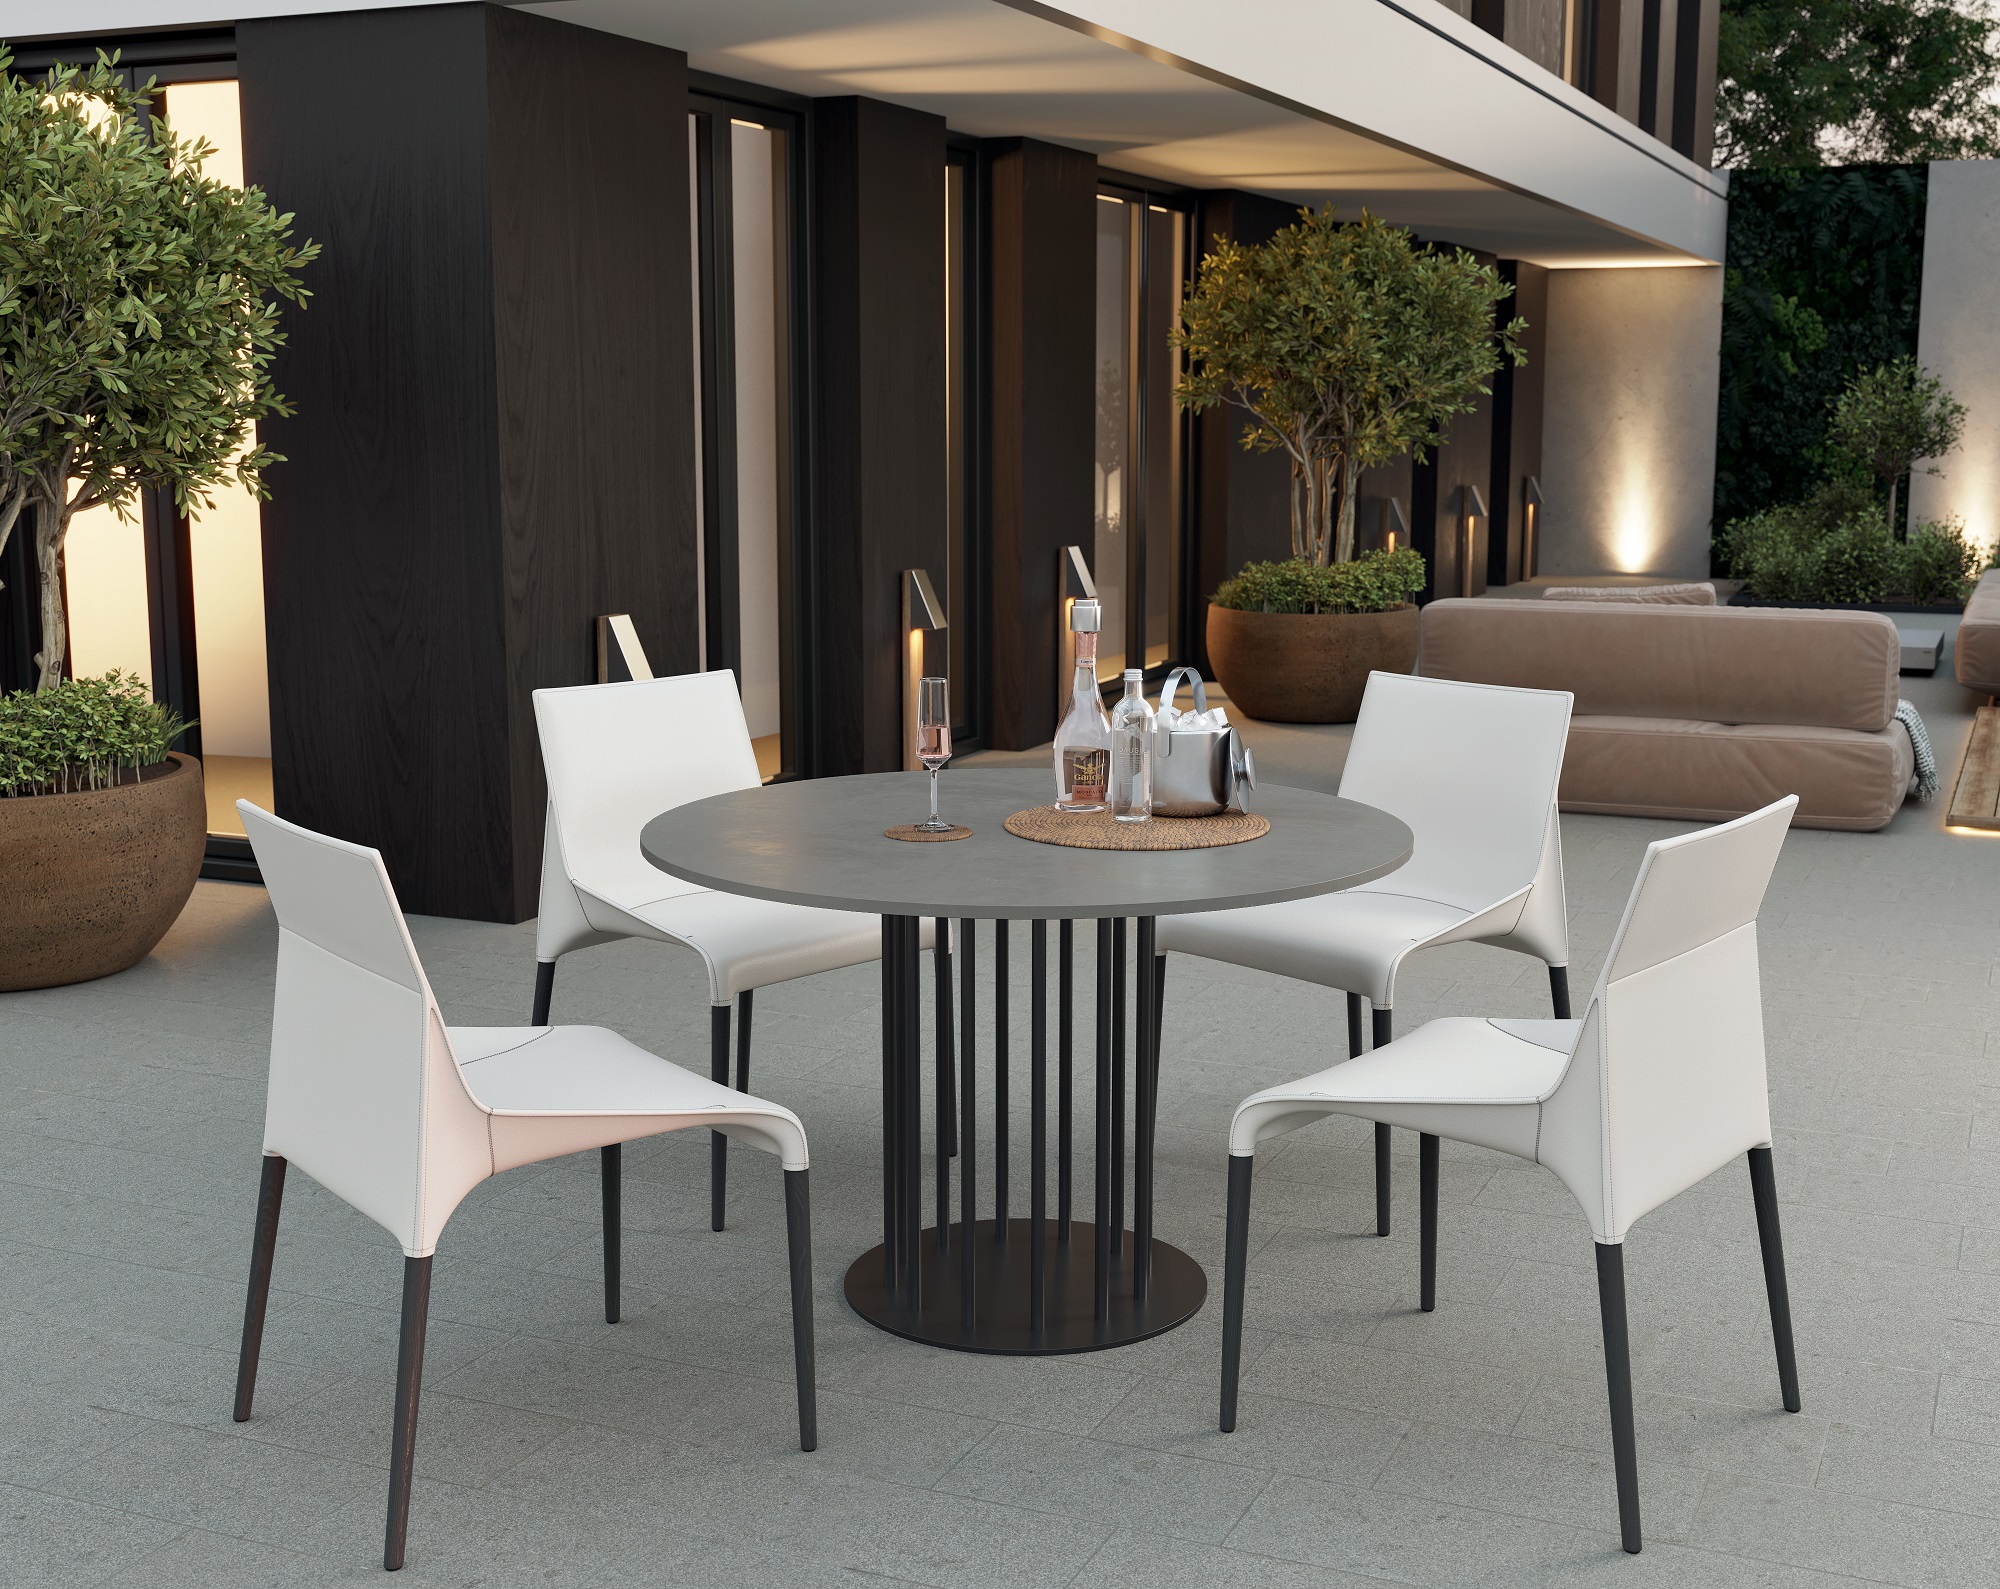 CO33 Table de salle à manger ronde moderne en béton pour la terrasse 120 cm gris béton avec structure métallique noire